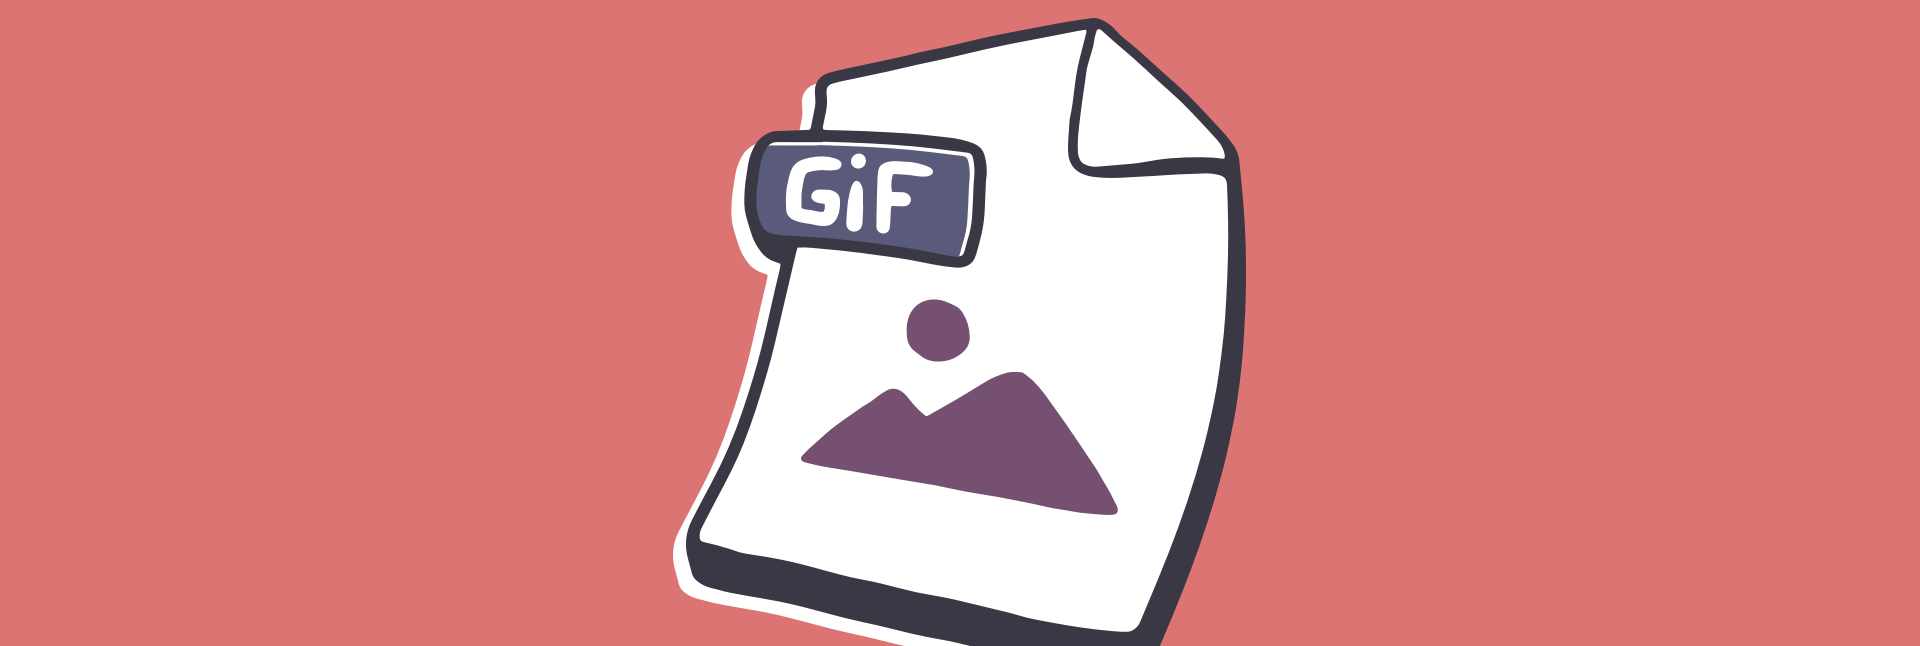 Aprenda Como Criar um GIF de Texto Animado com o DemoCreator